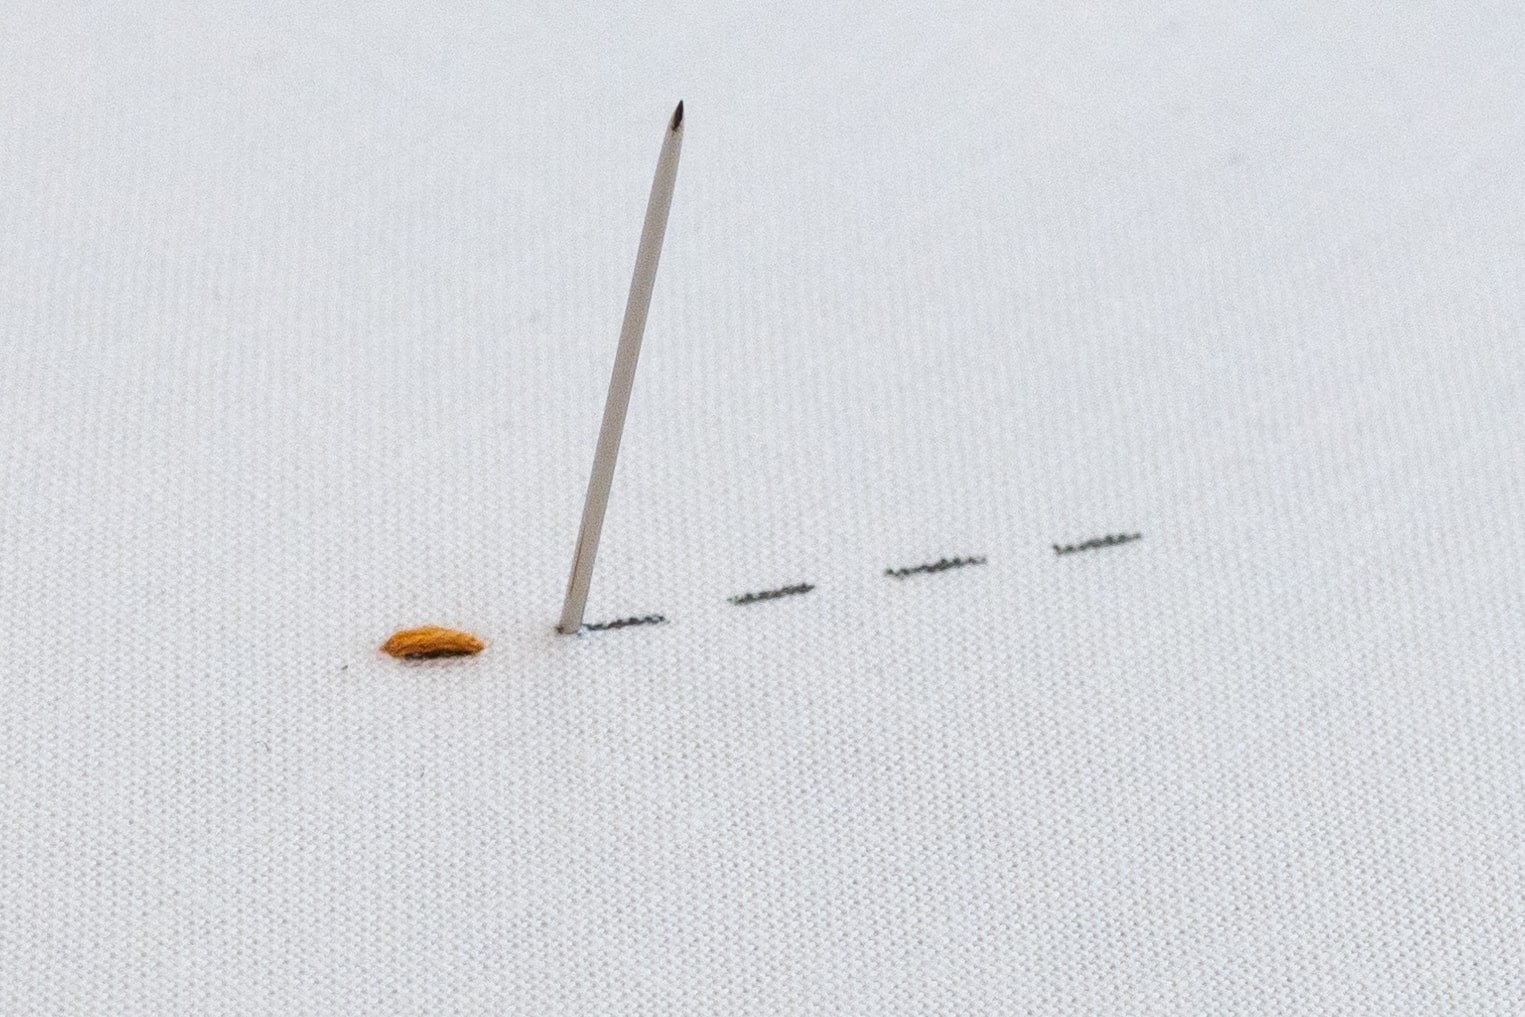 A stitch pokes down a stitch length ahead.